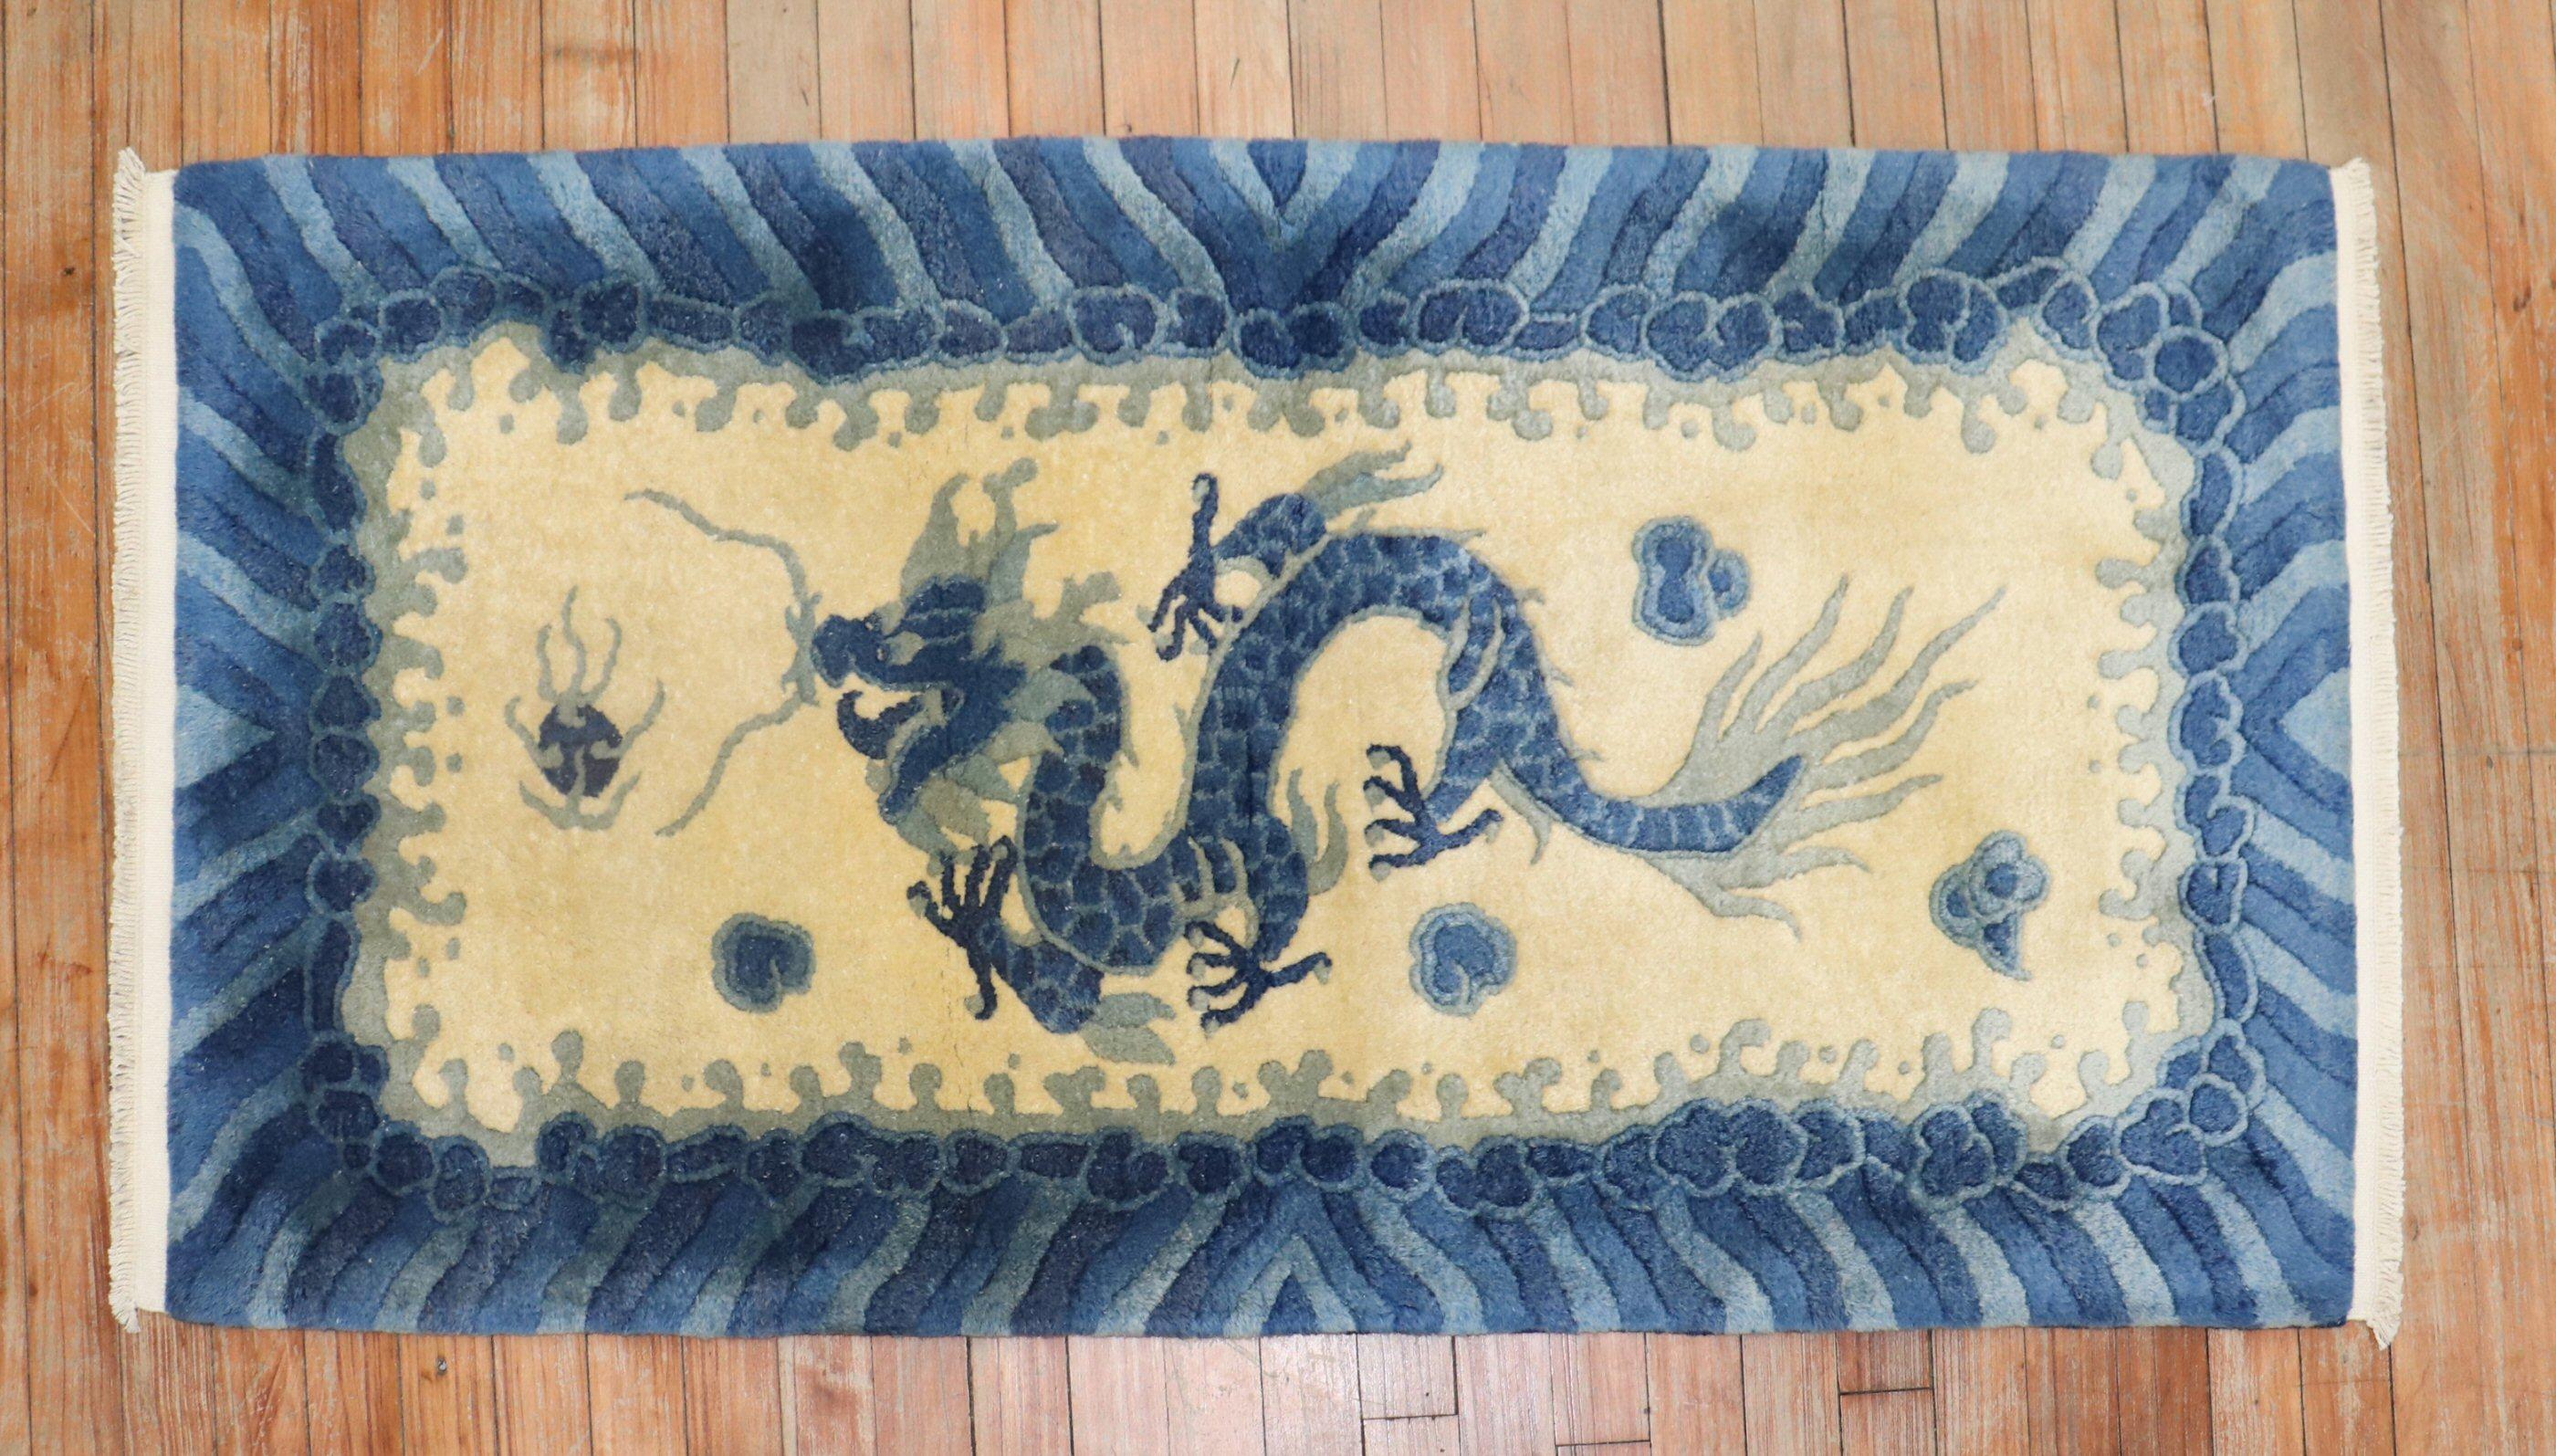 Ein vollfloriger chinesischer Teppich aus dem 3. Viertel des 20. Jahrhunderts mit einem blauen Drachen auf einem gelb-beigen Feld. Akzente in Blau.

Maße: 2'3